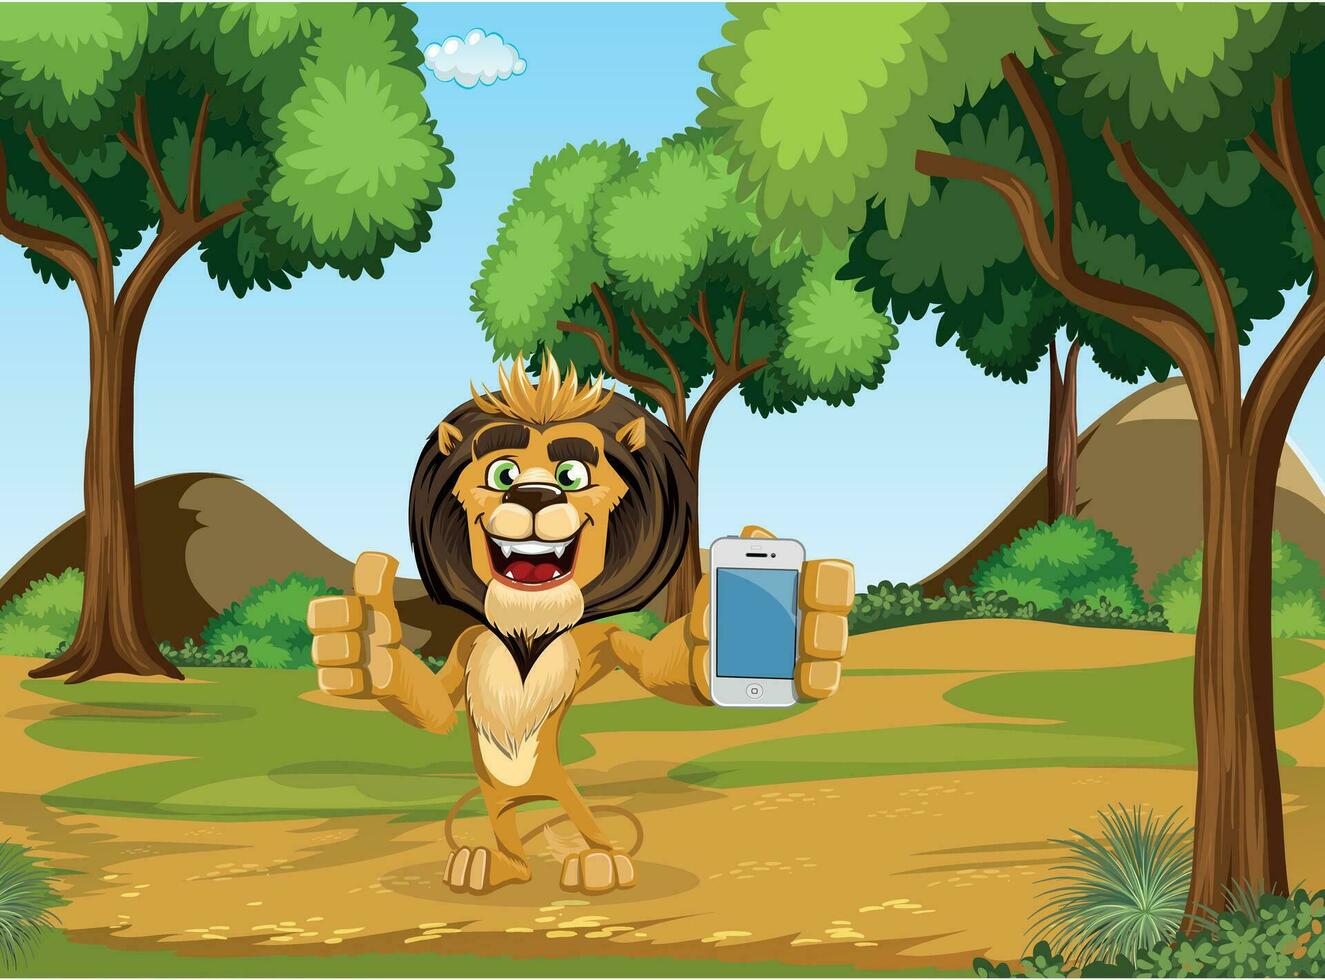 selva rei leão desenho animado trabalhos vetor